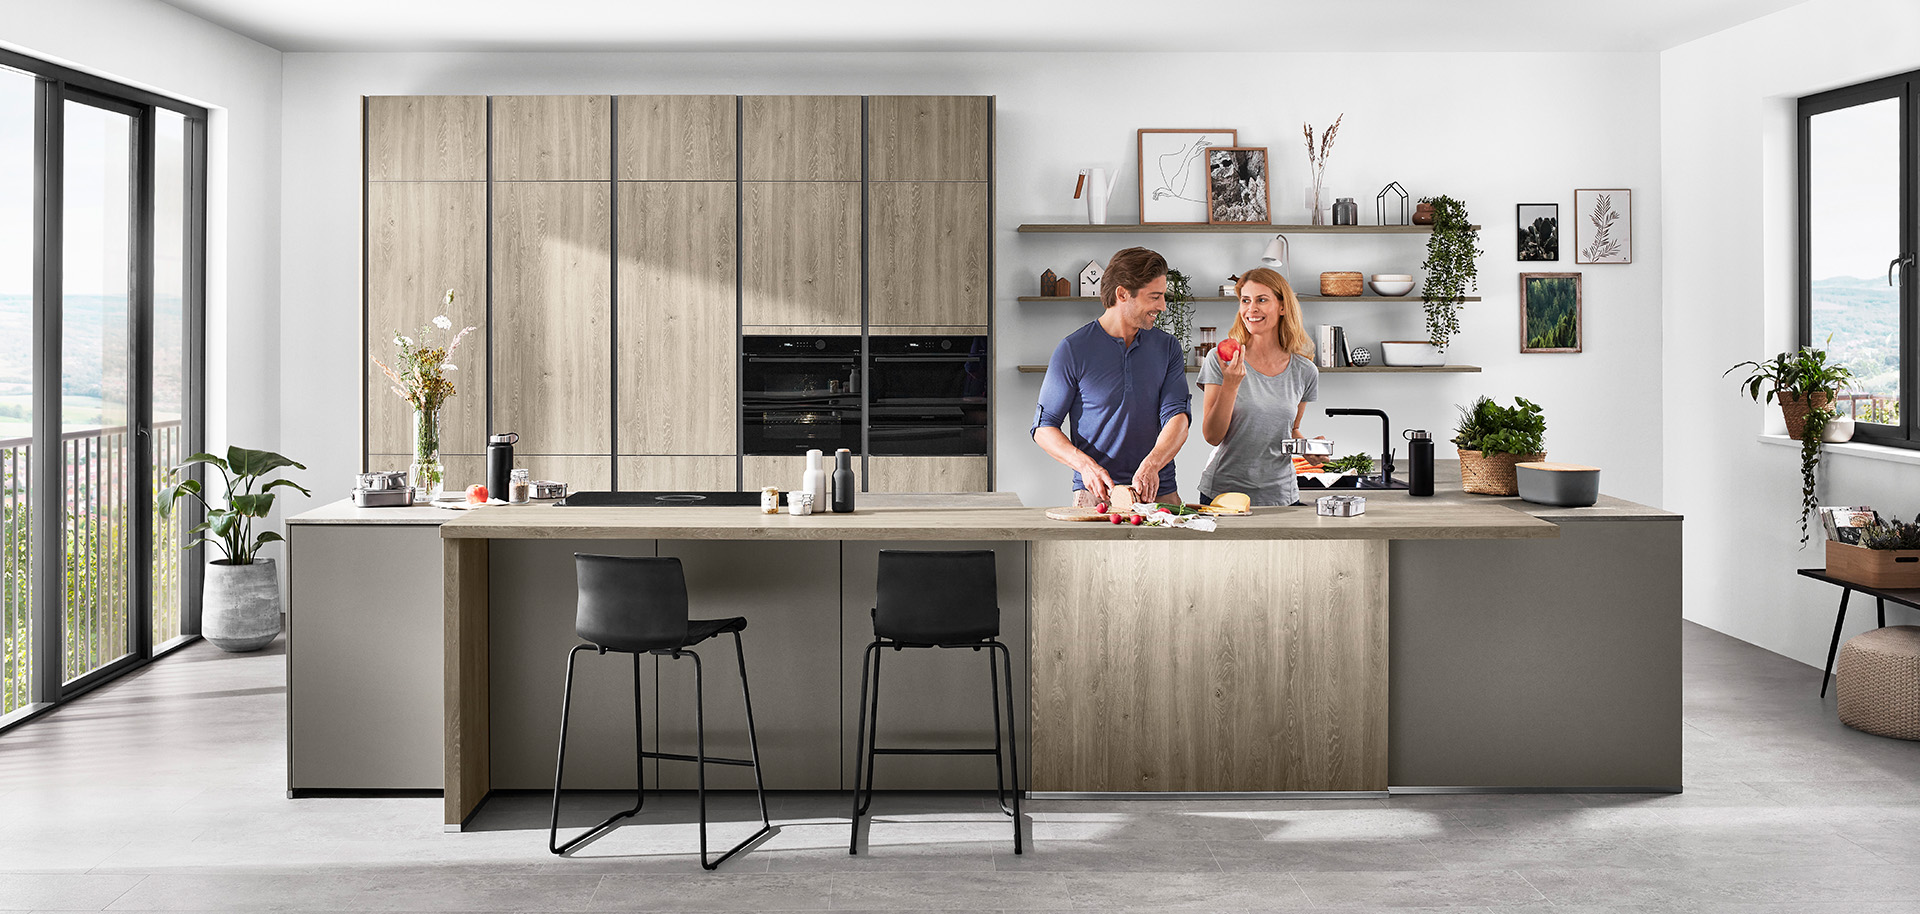 Una cocina moderna con una pareja preparando comida juntos, con gabinetes elegantes, electrodomésticos integrados y una isla con taburetes que da a una vista panorámica.